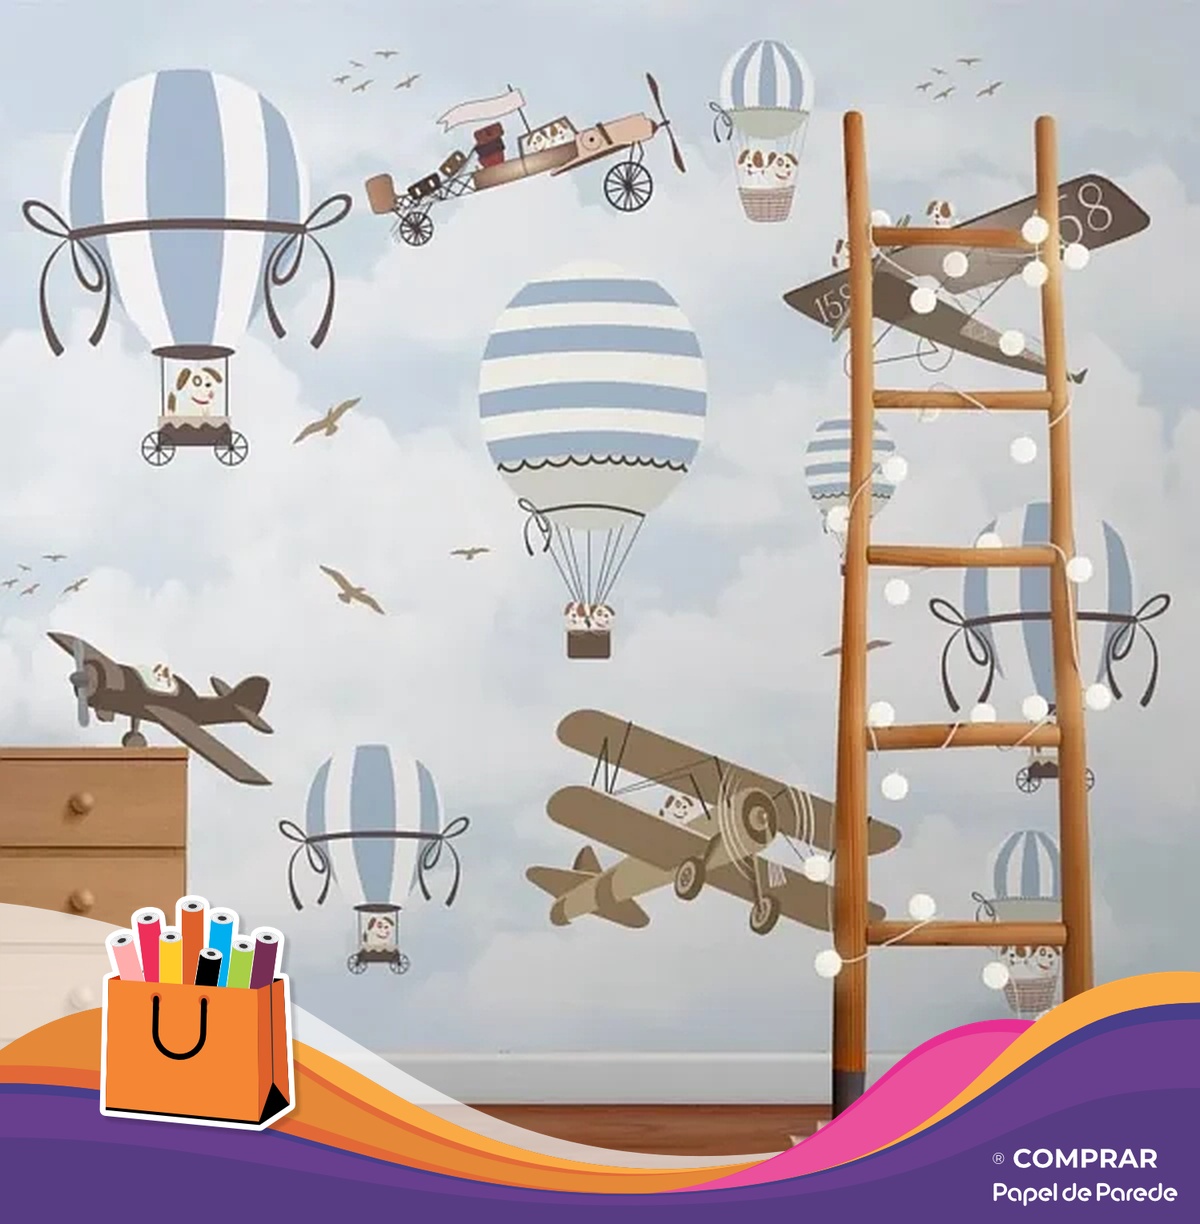 papel de parede aventura aerea infantil decoracao Papel de Parede Aventura Aerea Avioes e Baloes Ceu Azul criancas de 0 a 10 anos comprar papel de parede 600x612